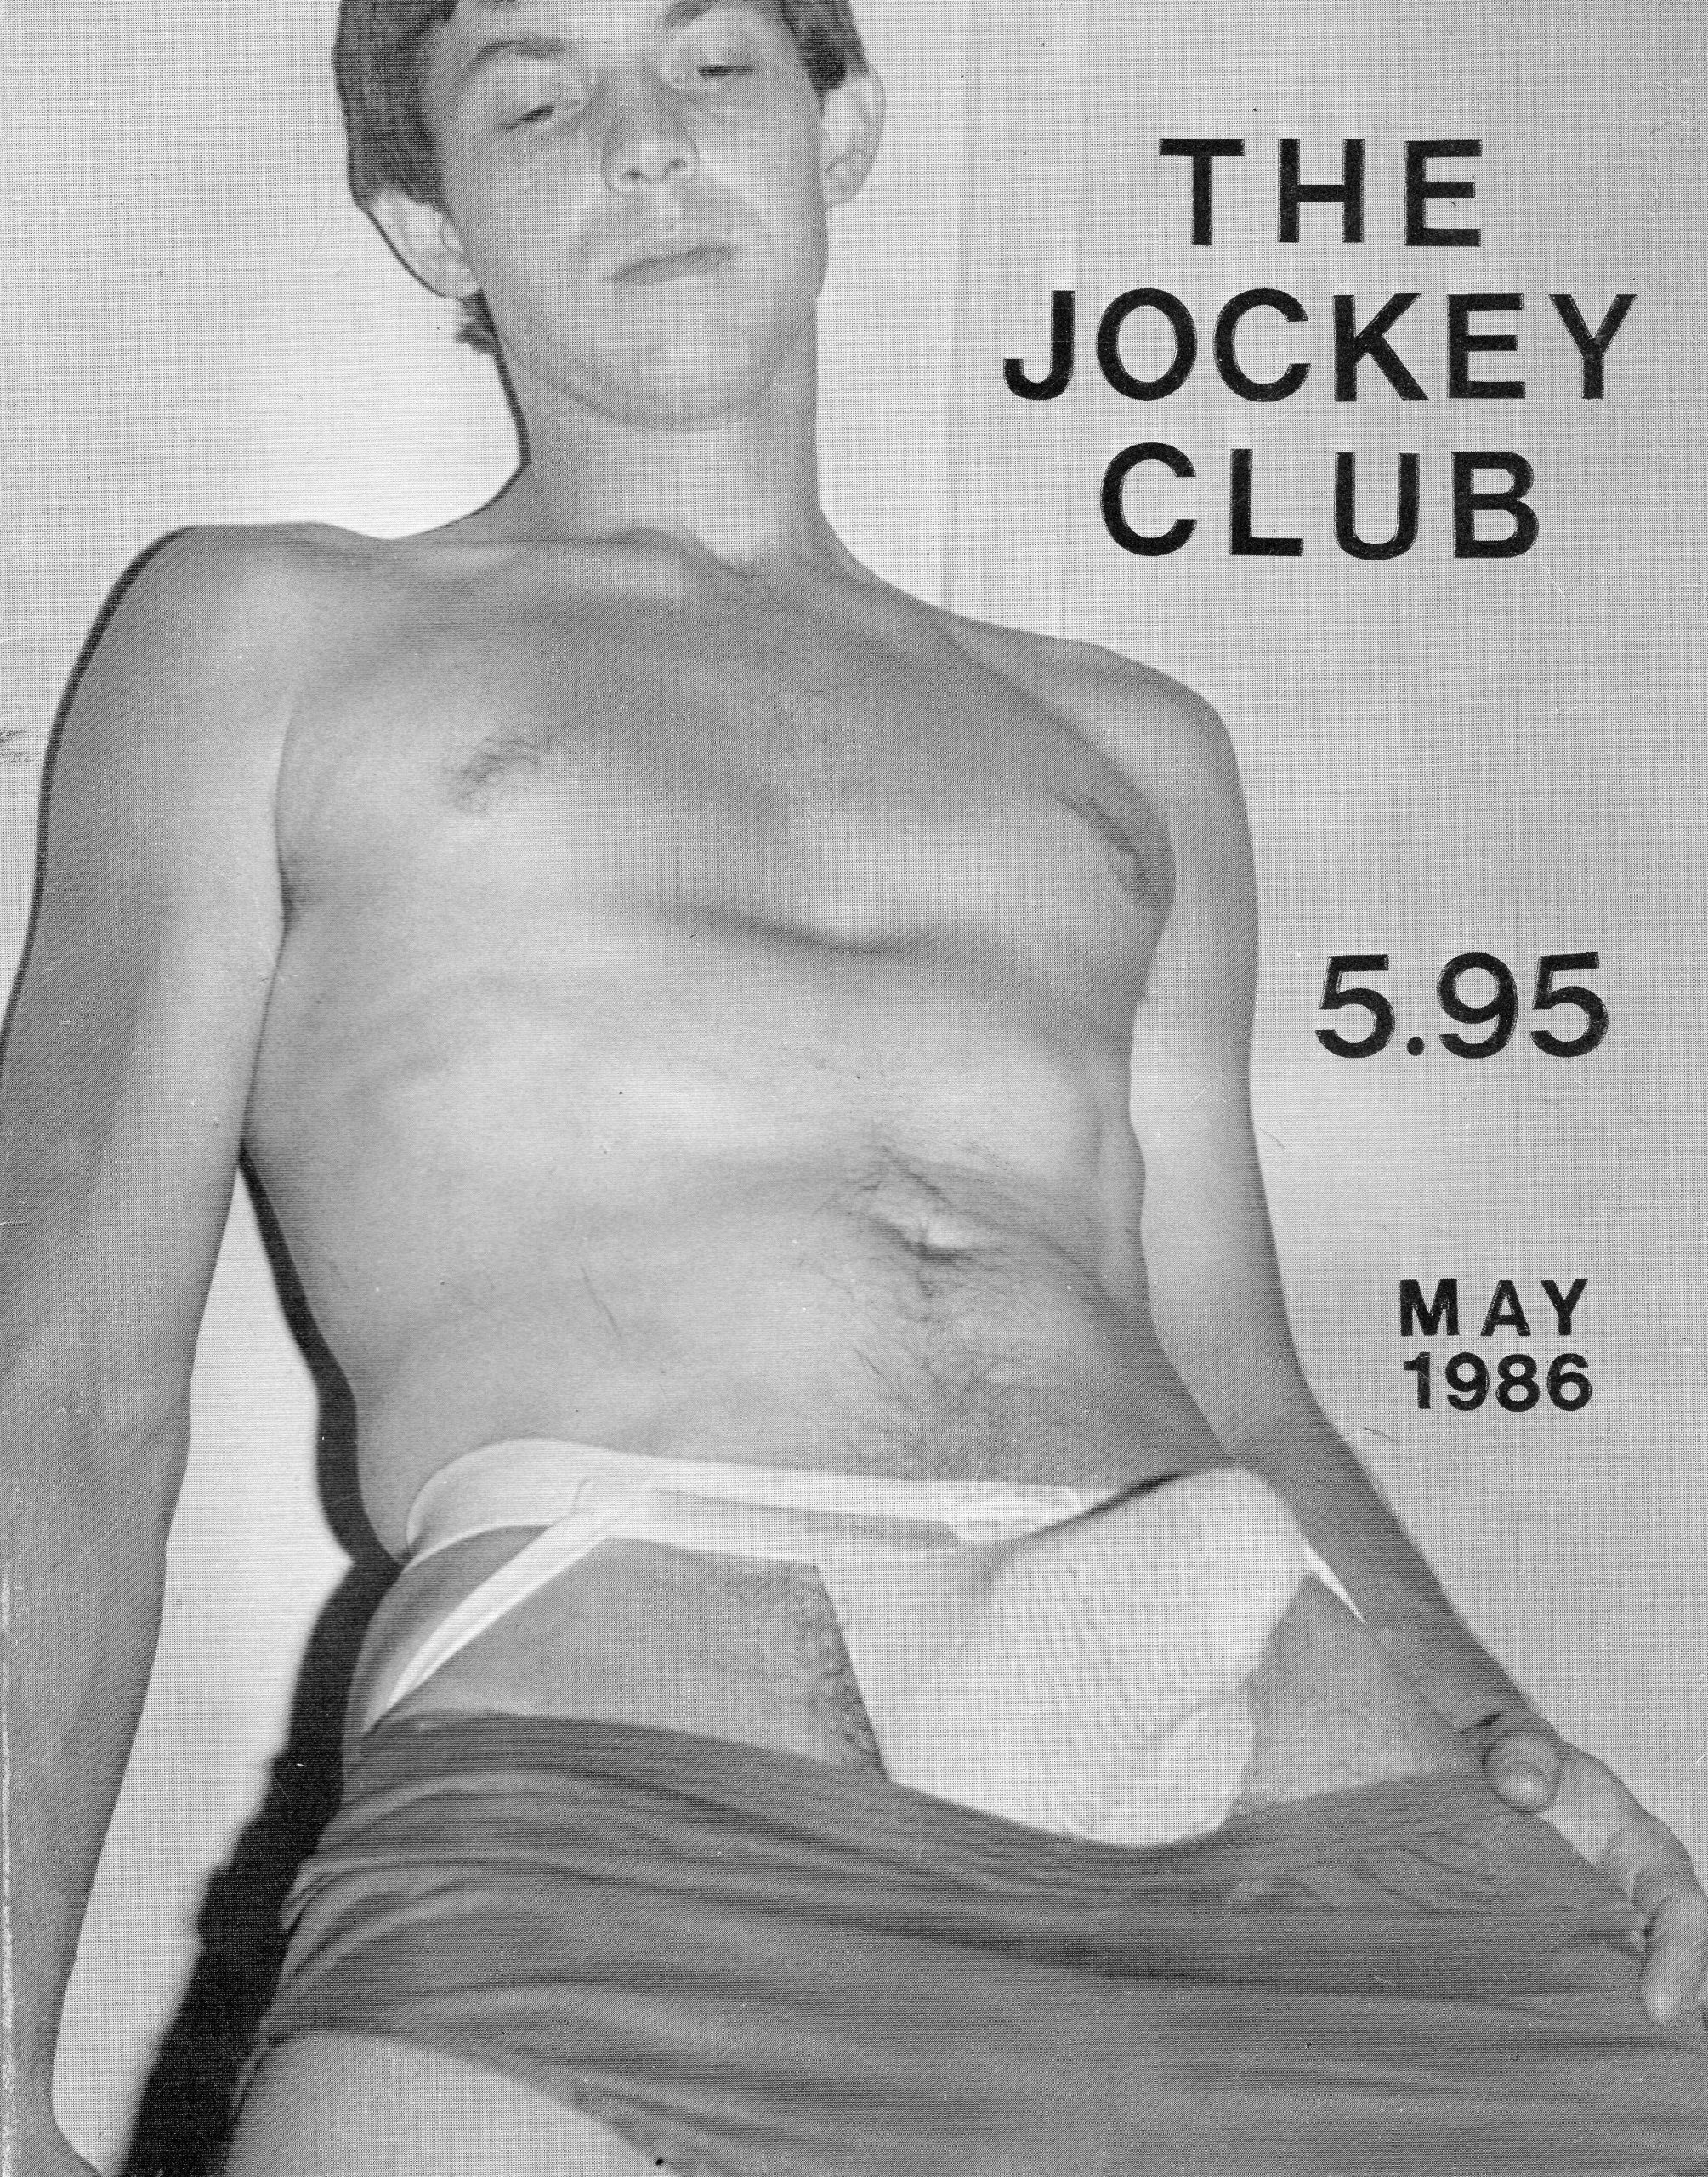 Club (Vintage adult magazine, April 1980)